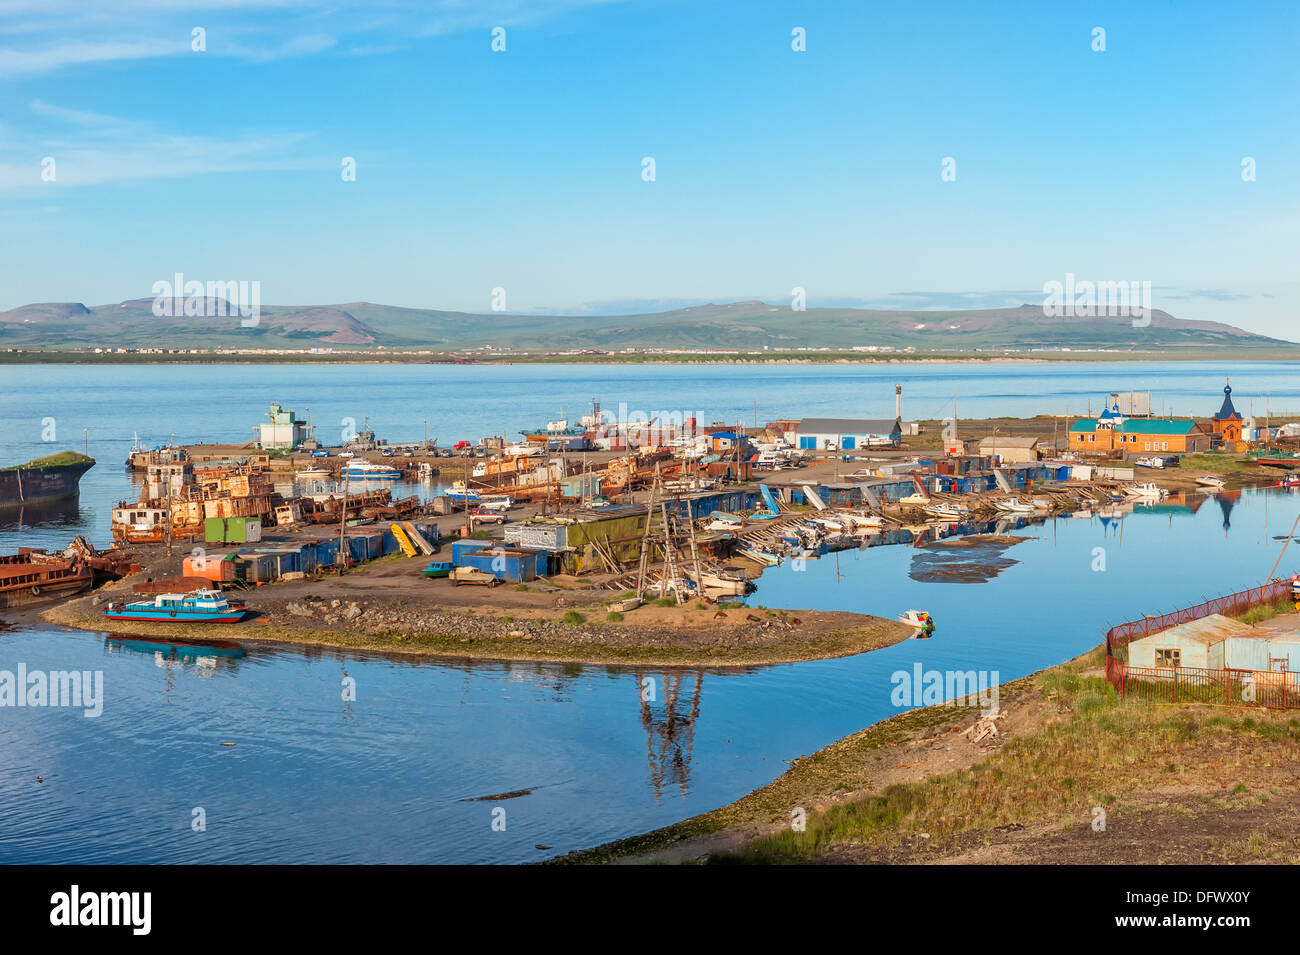 La ville de Sibérie Tchoukotka Anadyr harbour, Province, Extrême-Orient russe Banque D'Images